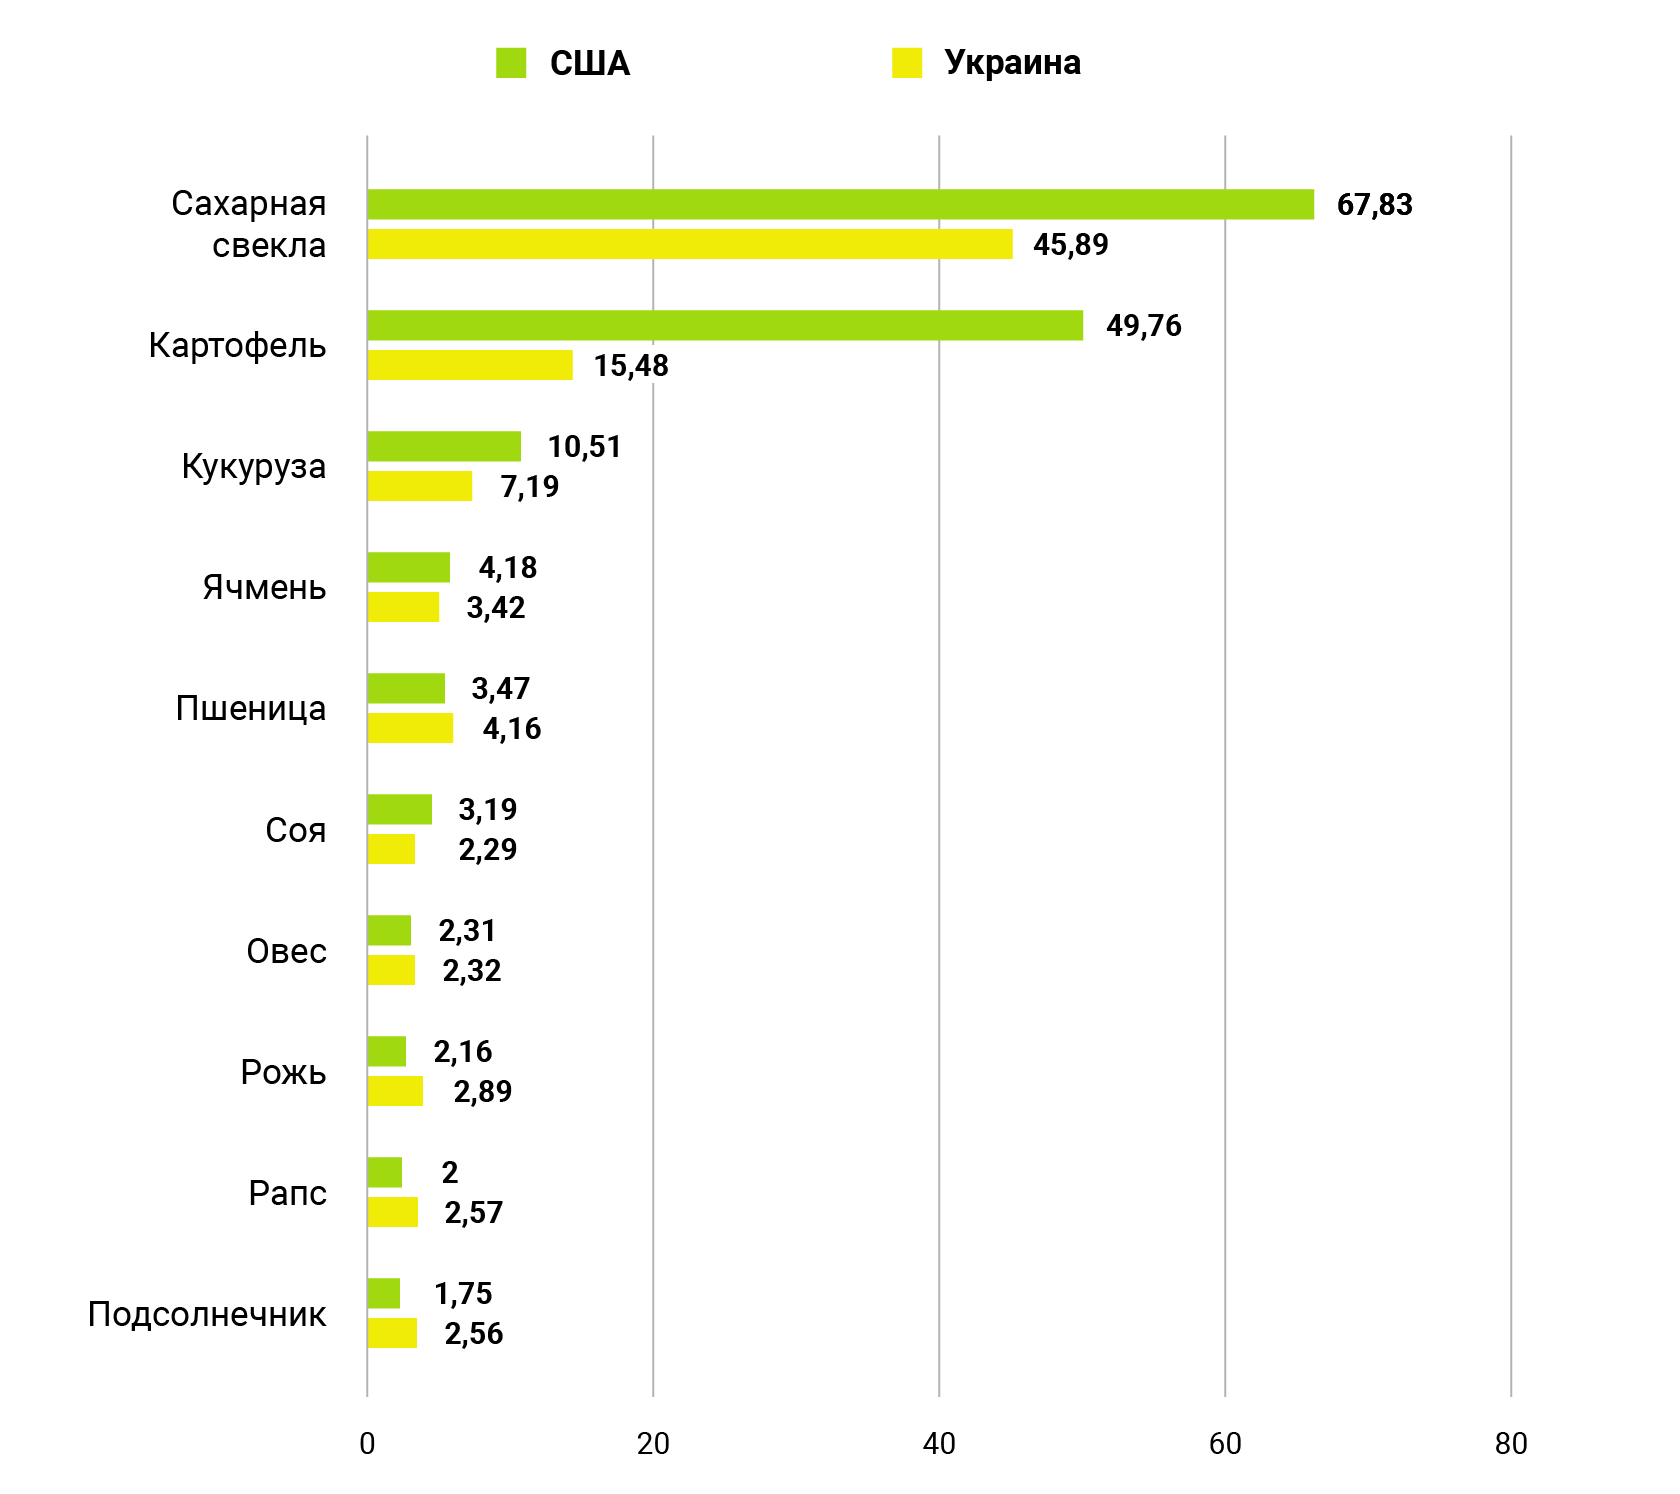 Сравнение урожайности основных с/х культур США и Украины в 2019 г., т/га